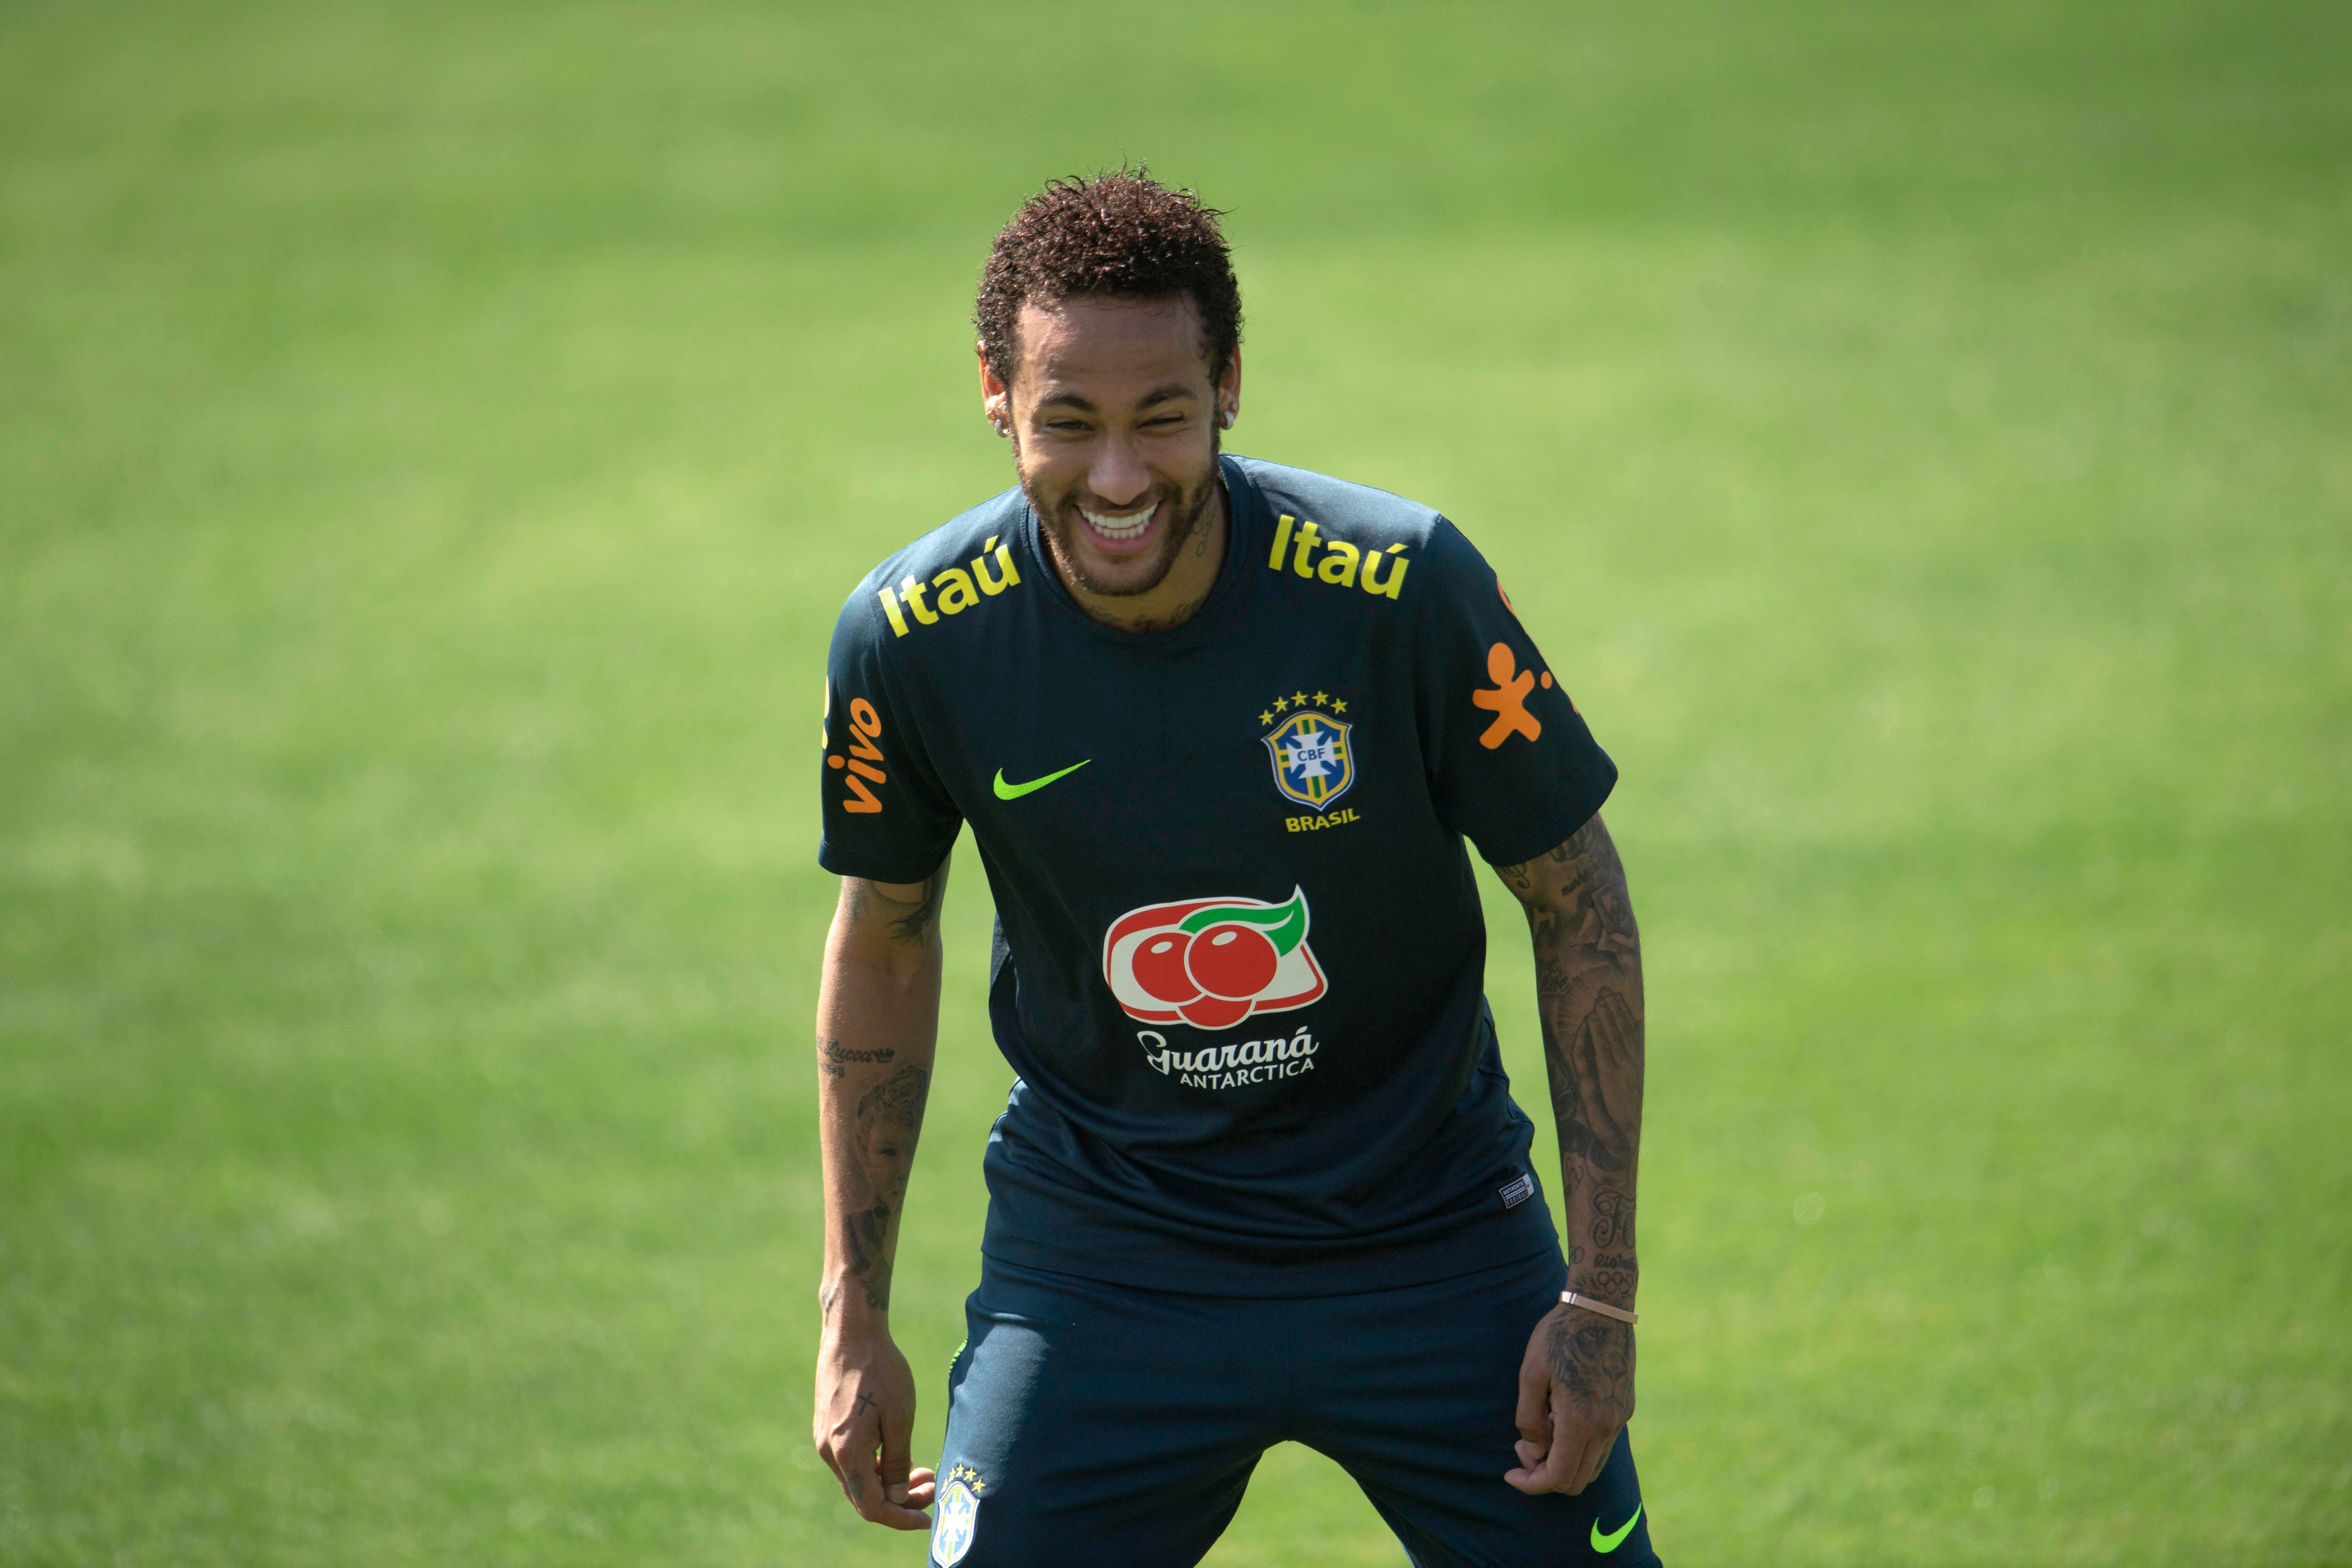 El delantero brasileño Neymar Jr trabajó con normalidad con sus compañeros previo a la Copa América. (Foto Prensa Libre: AFP)